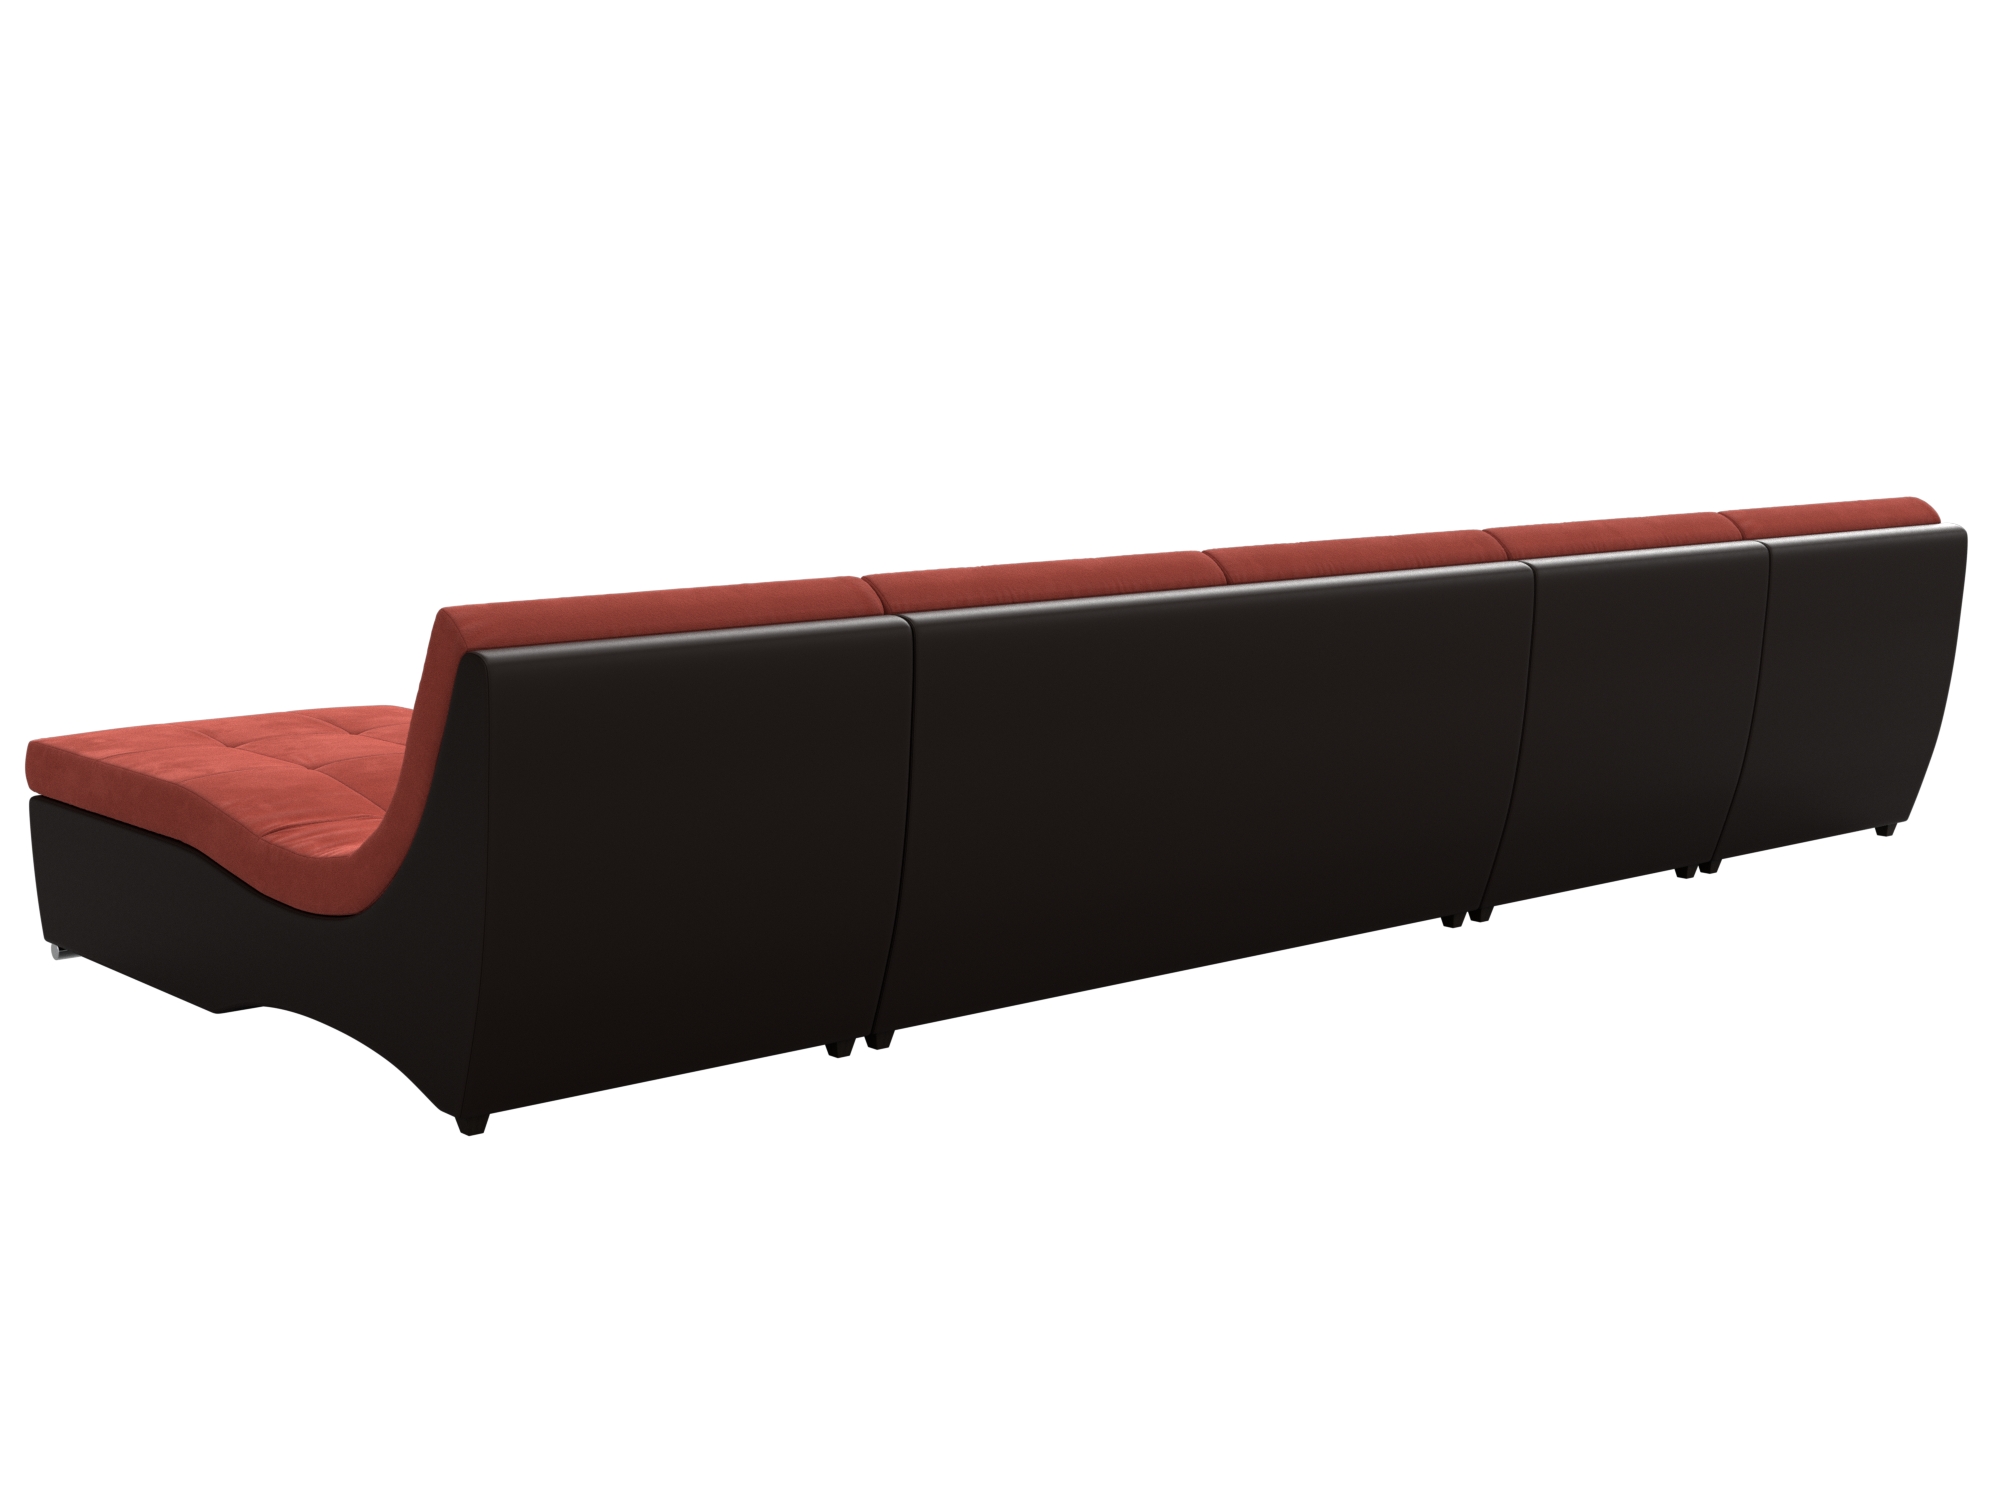 П-образный модульный диван Монреаль Long (Коралловый\Коричневый)